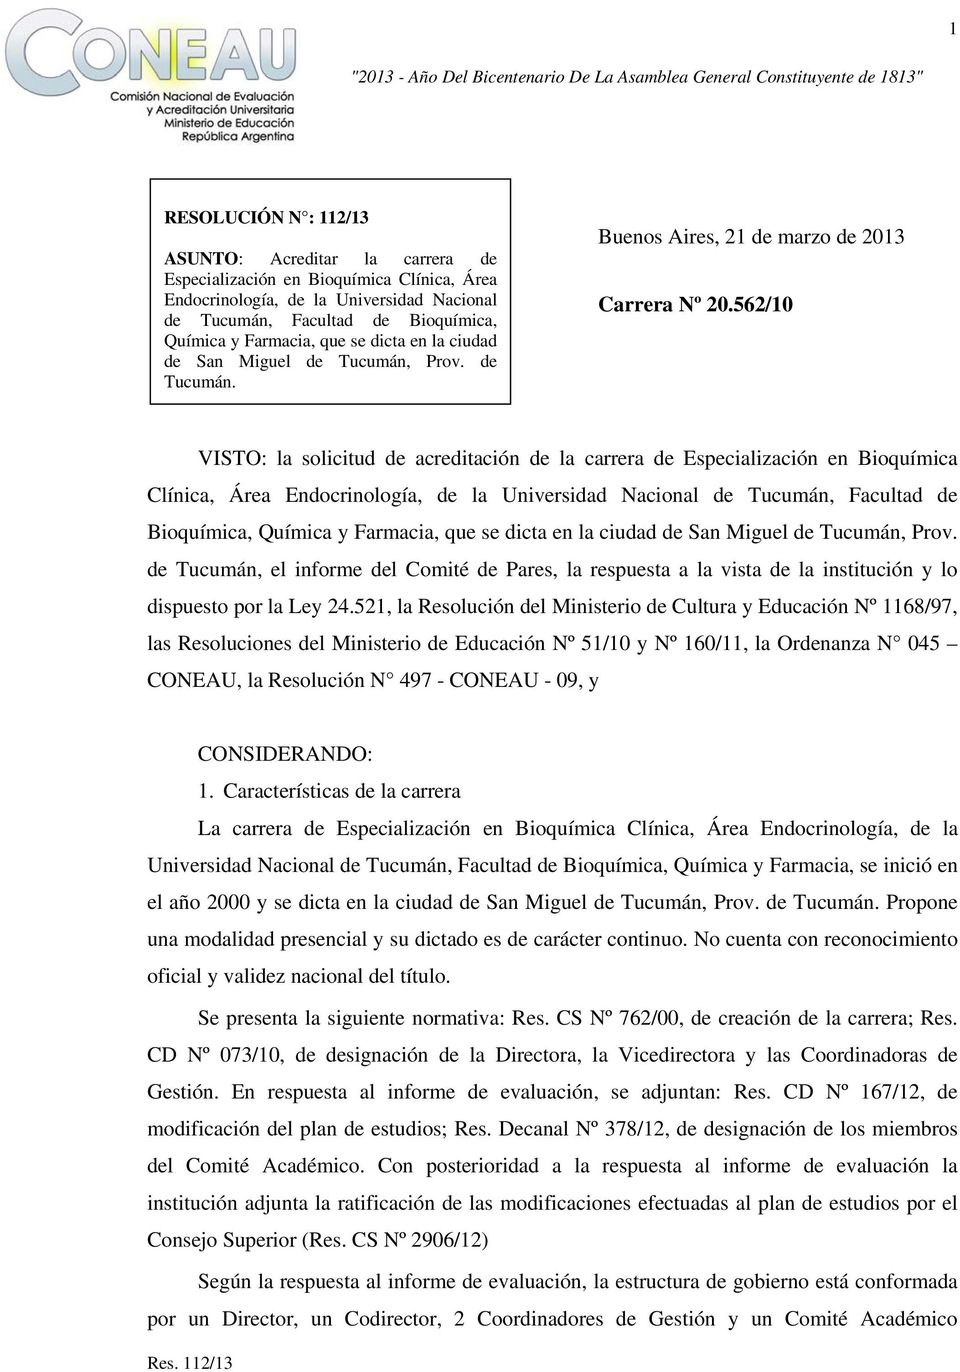 562/10 VISTO: la solicitud de acreditación de la carrera de Especialización en Bioquímica Clínica, Área Endocrinología, de la Universidad Nacional de Tucumán, Facultad de Bioquímica, Química y